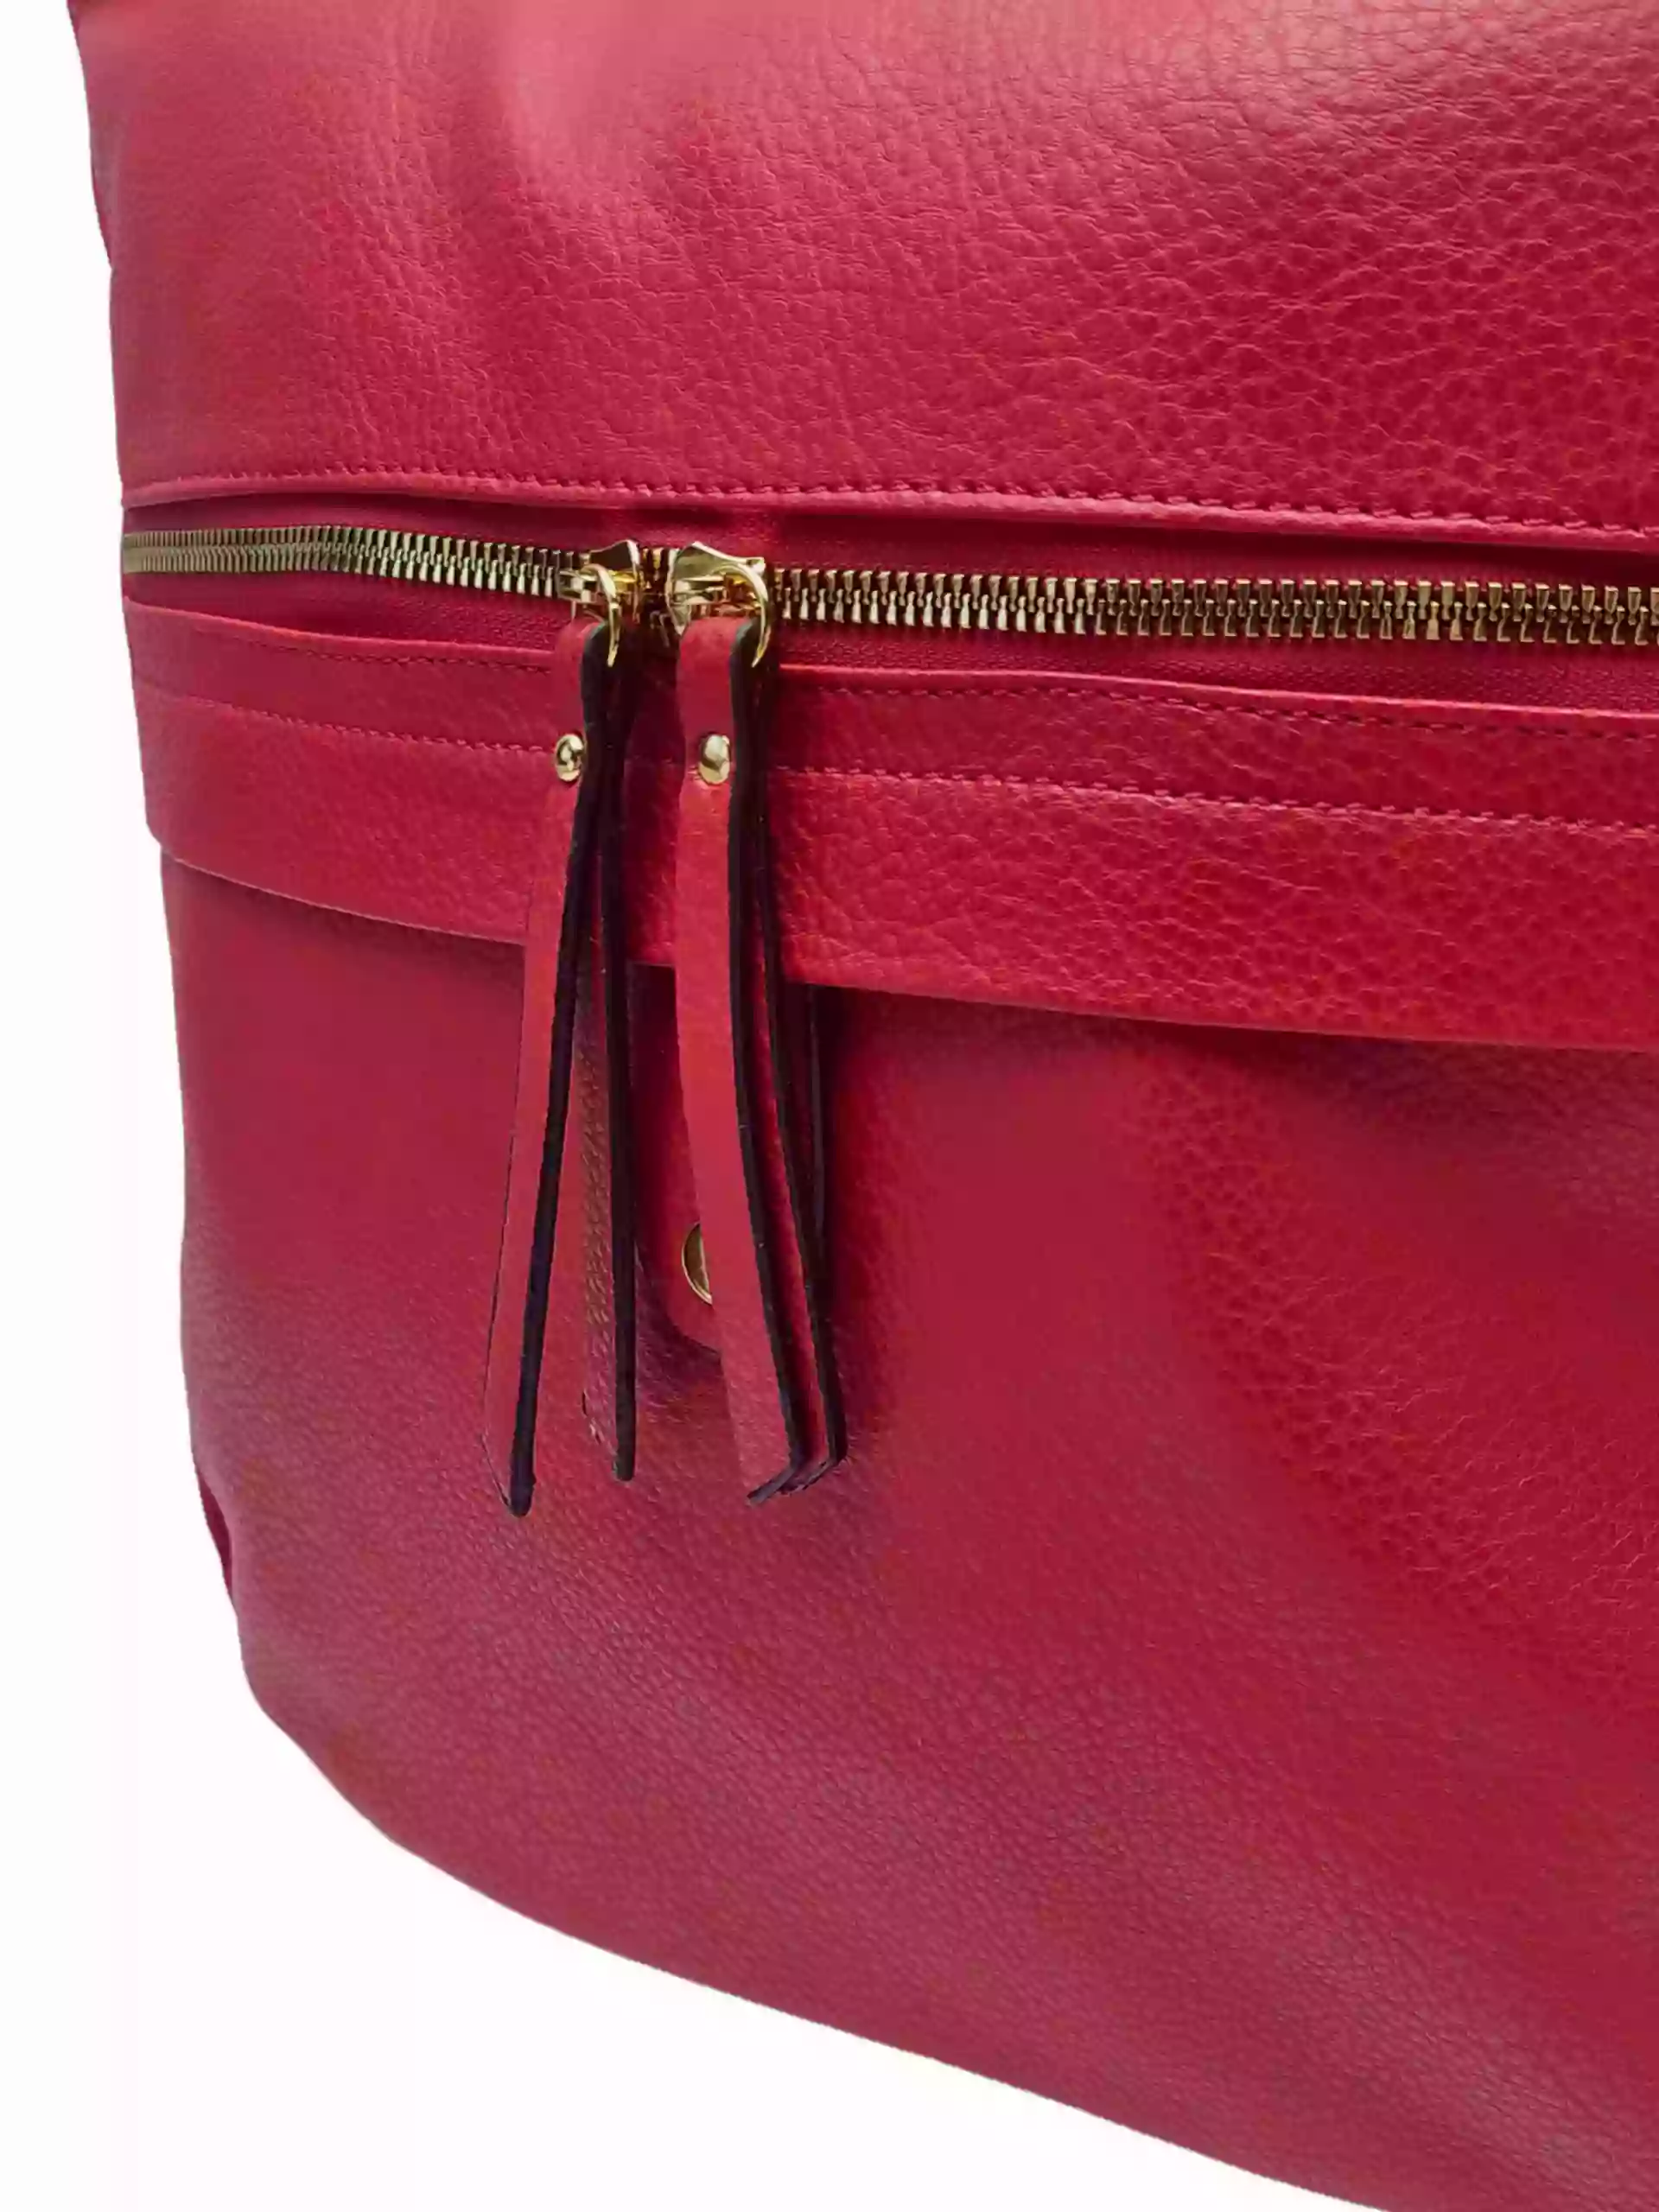 Velký tmavě červený kabelko-batoh 2v1 s kapsou, Int. Company, H23, detail kabelko-batohu 2v1